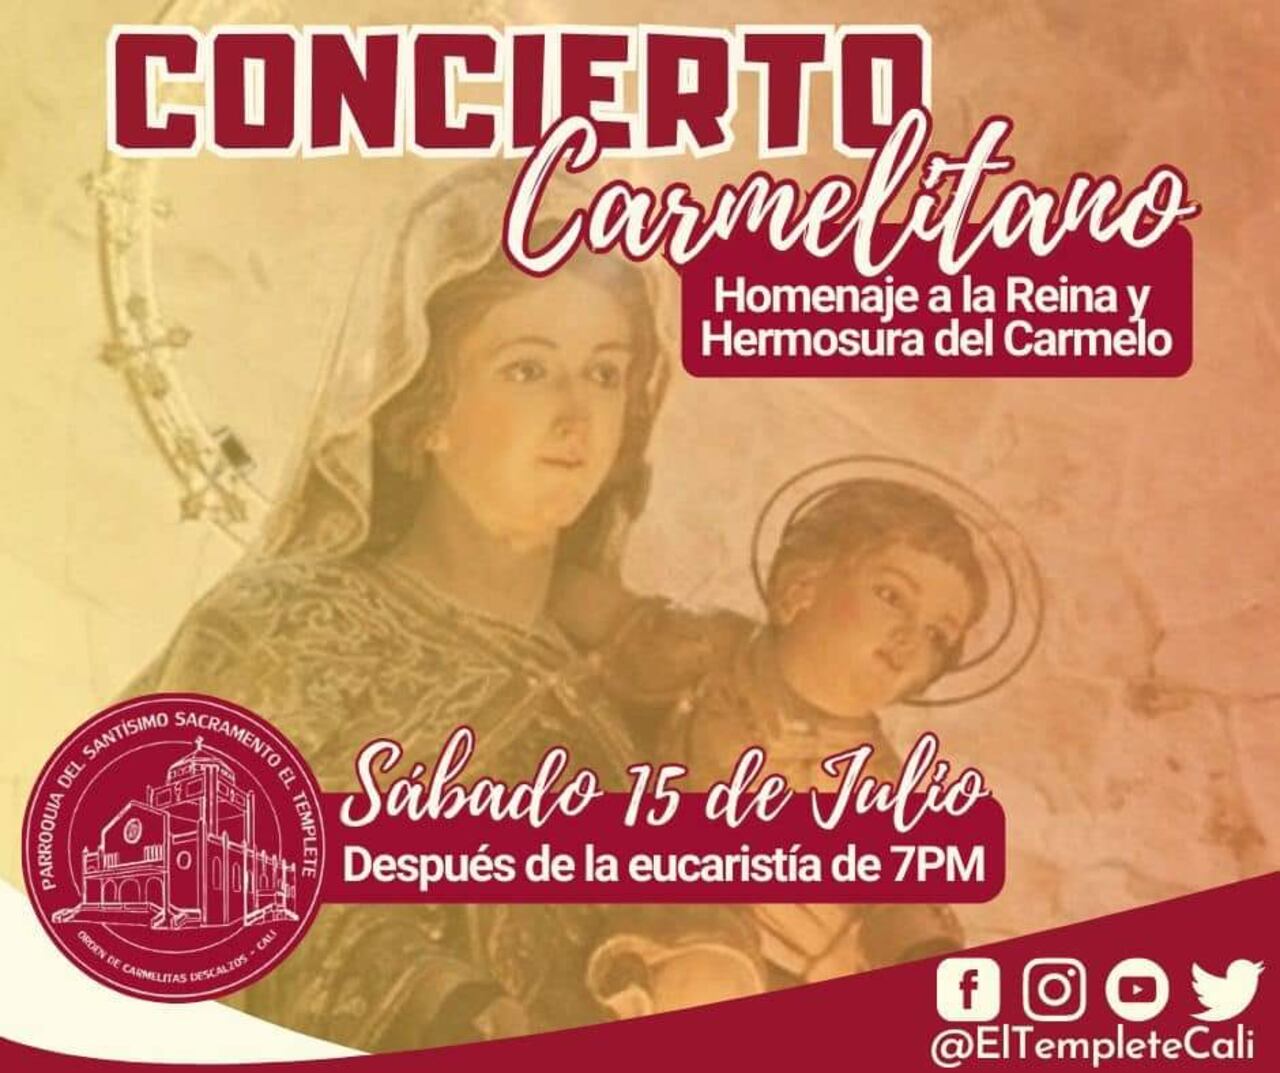 Esta es una de las actividades que se llevarán a cabo este sábado, para celebrar la víspera de la fiesta de la Virgen del Carmen.